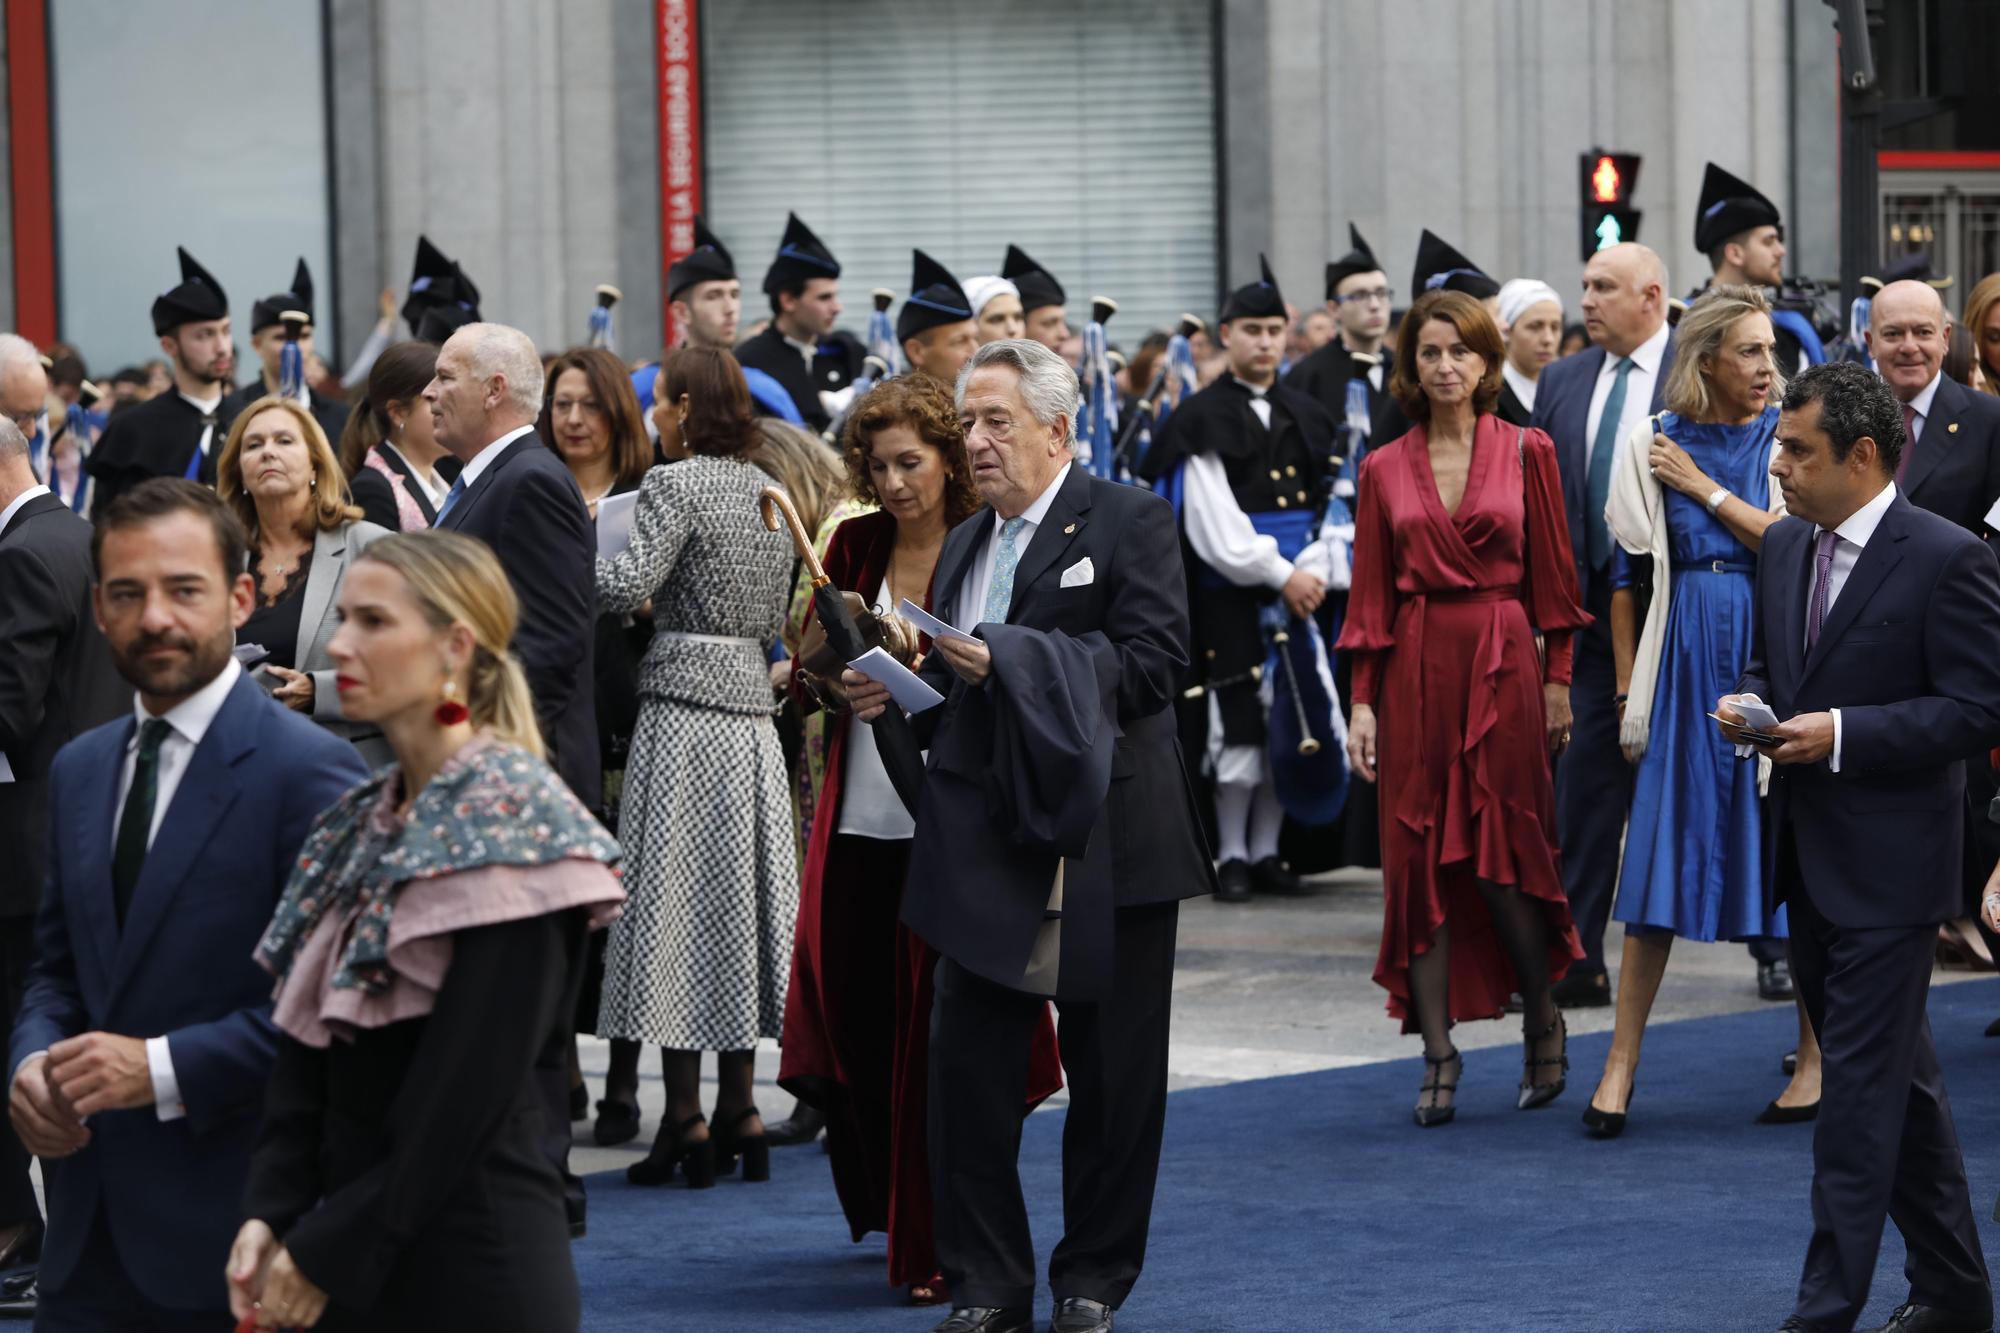 EN IMÁGENES: Así fue la alfombra azul de los premios "Princesa de Asturias" para entrar a la ceremonia en Oviedo